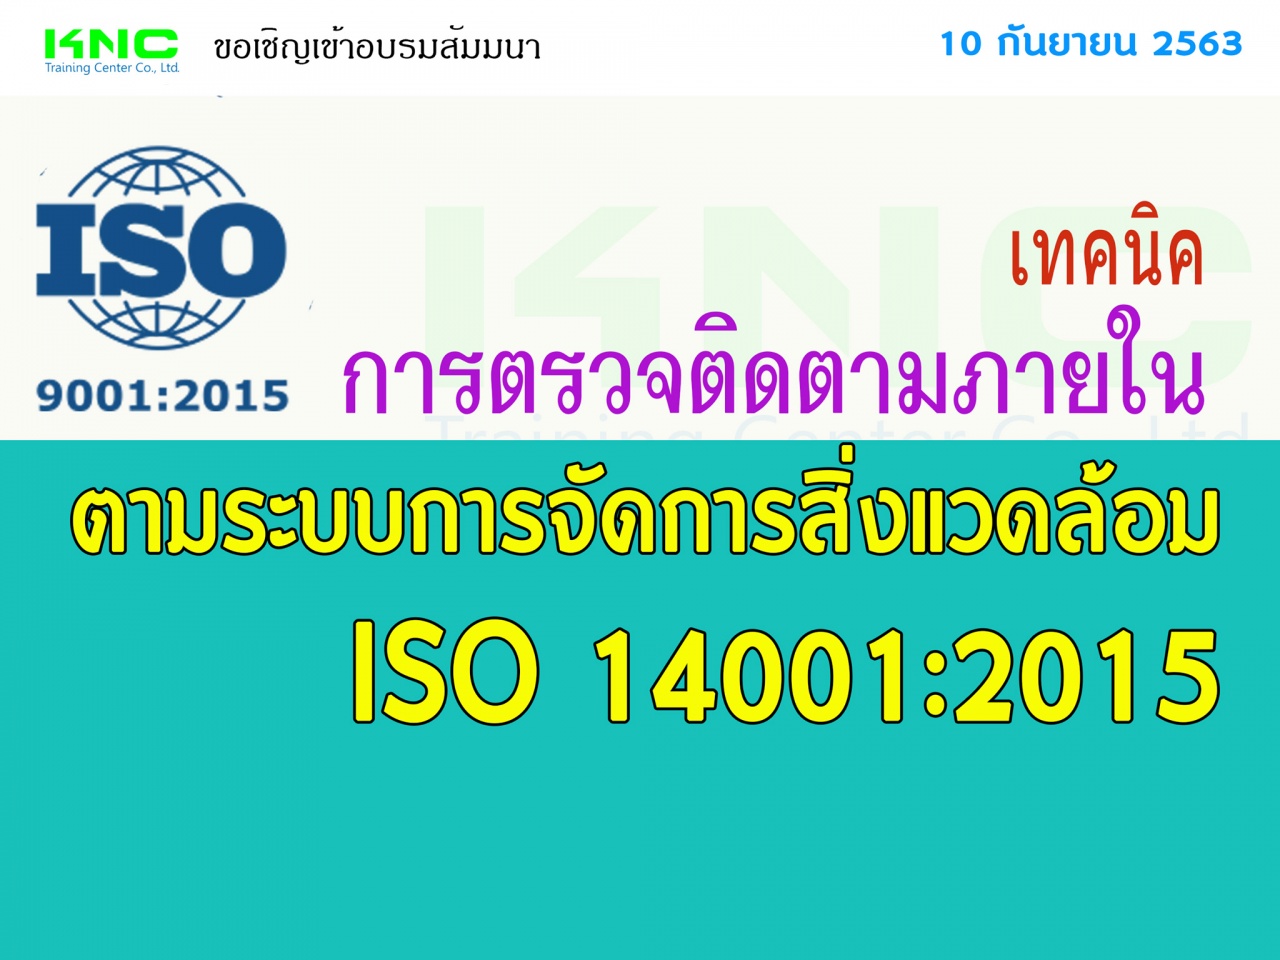 เทคนิคการตรวจติดตามภายในตามระบบการจัดการสิ่งแวดล้อม ISO 14001:2015